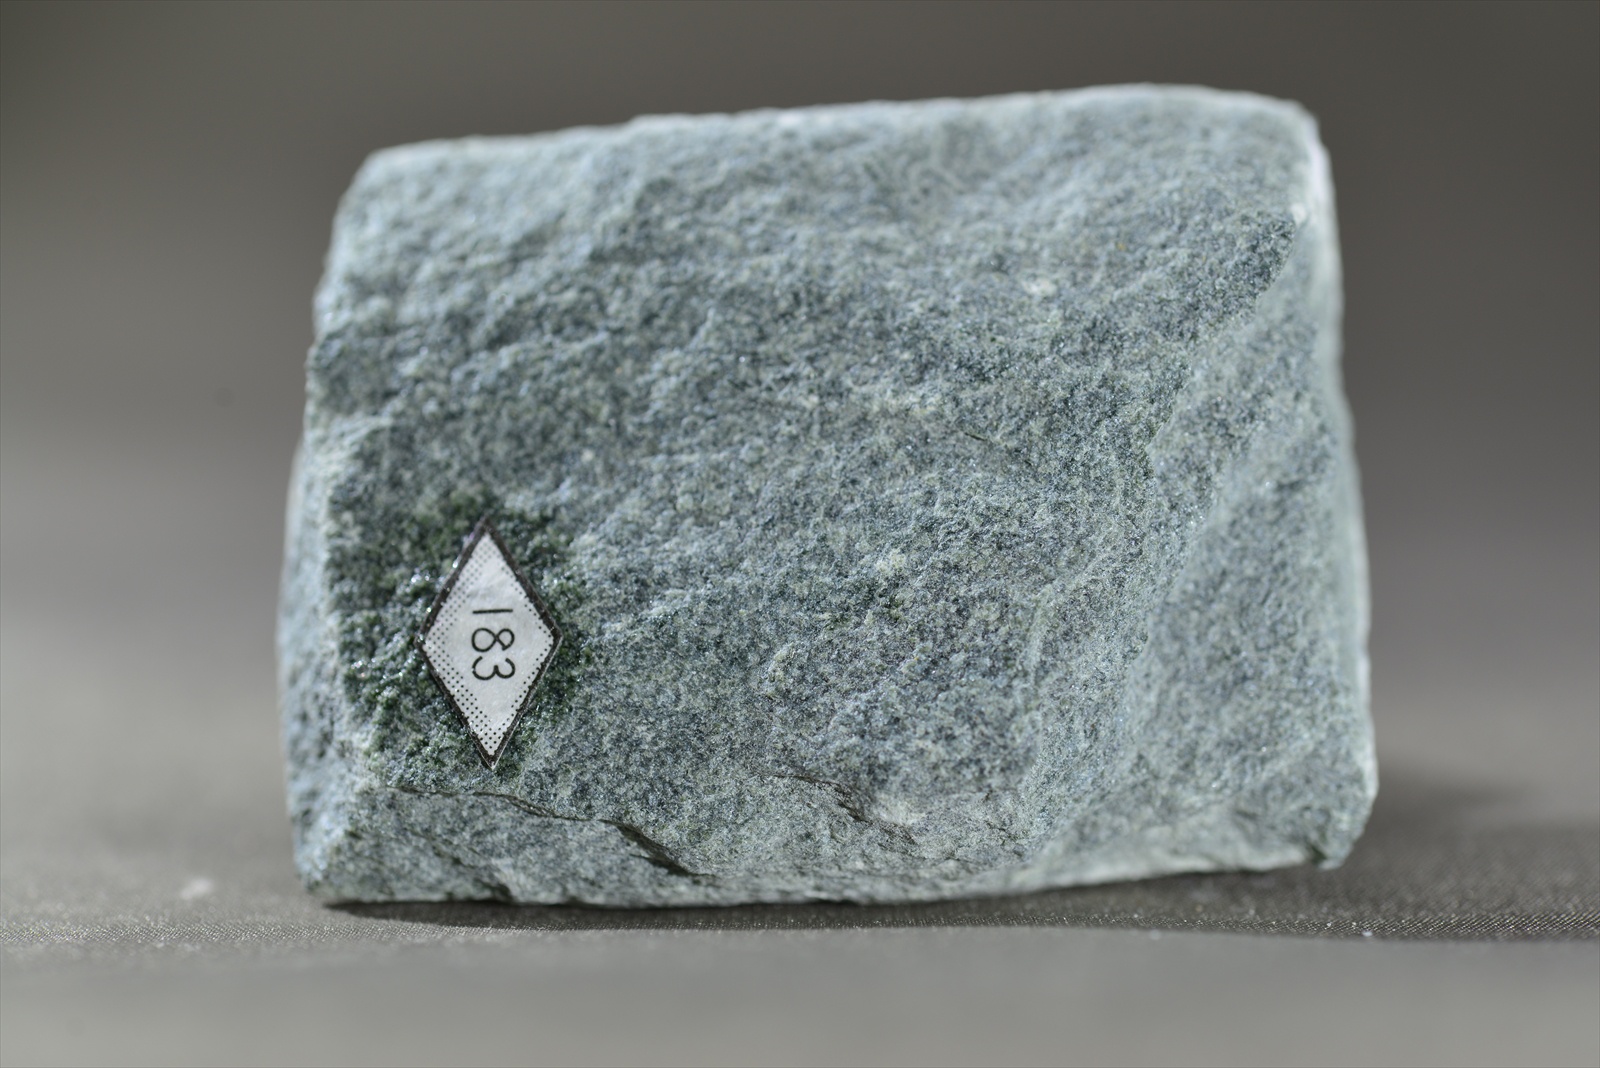 緑泥石緑簾石アクチノ閃石片岩(Chlorite-epidote-actinolite schist)